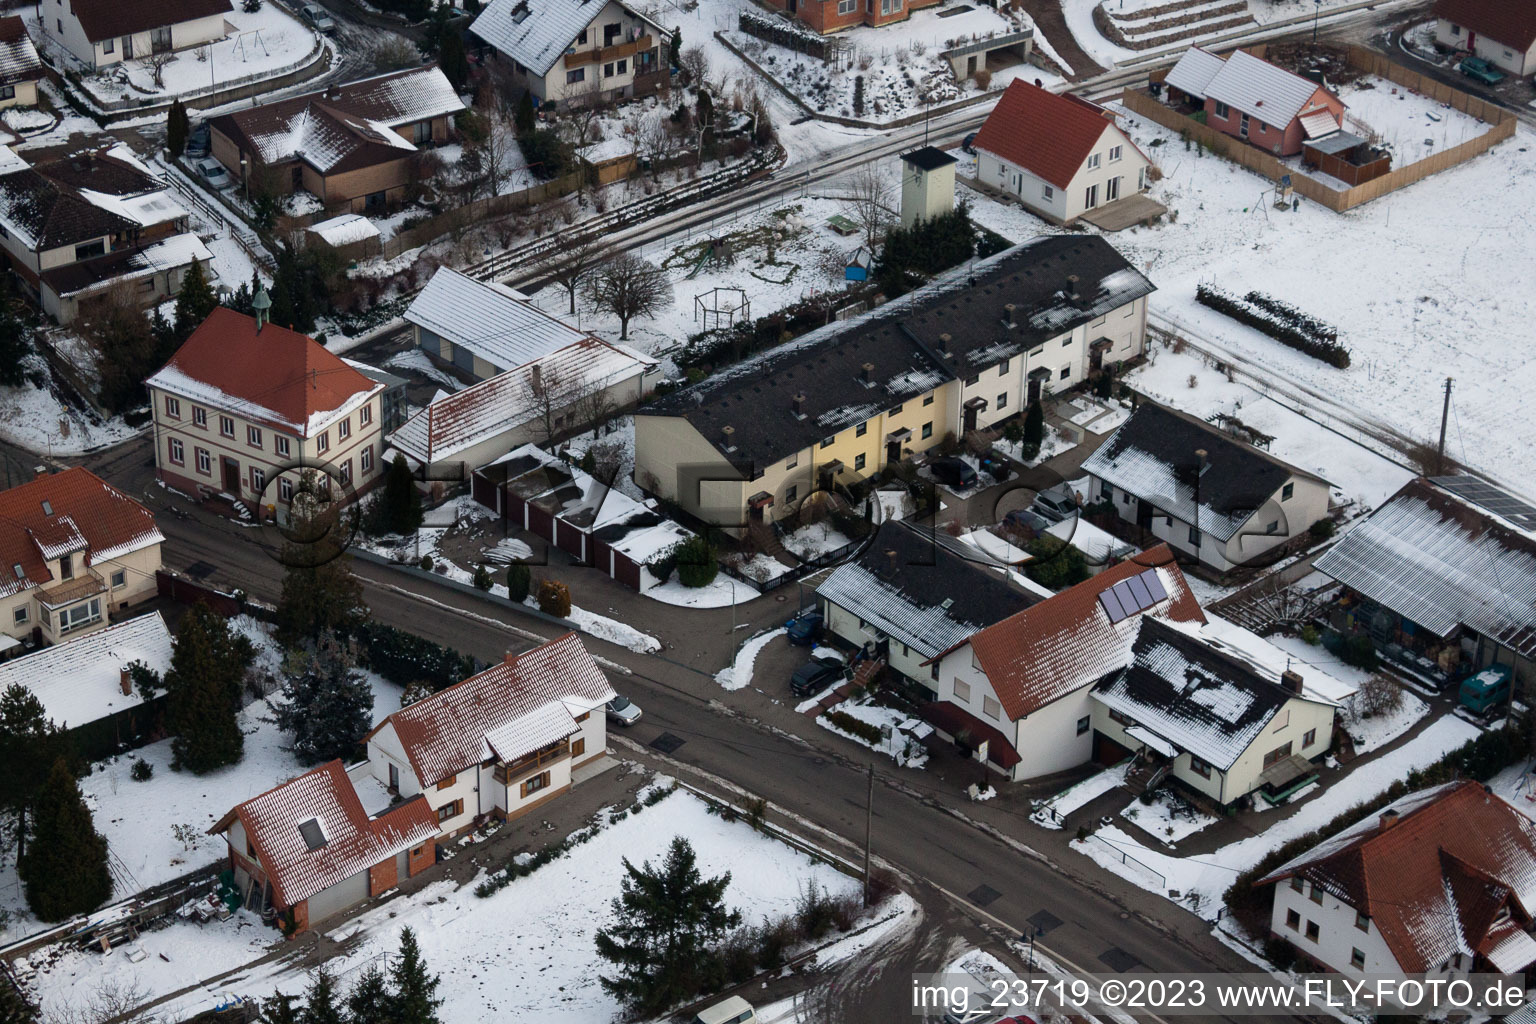 Hergersweiler im Bundesland Rheinland-Pfalz, Deutschland aus der Luft betrachtet